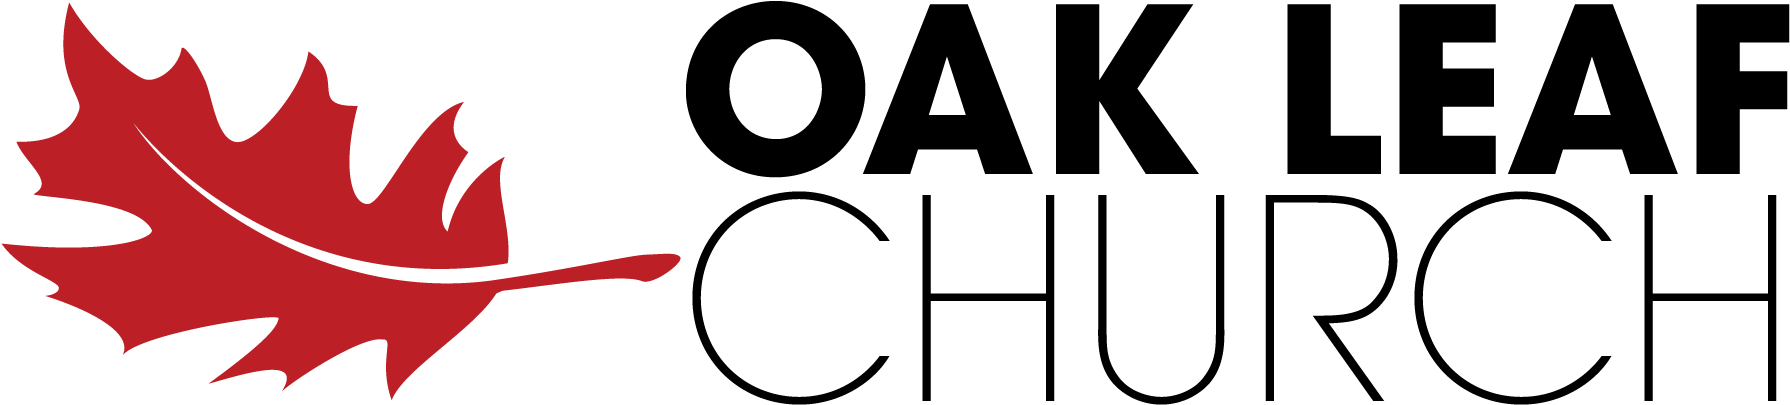 *logo-black - Red Oak Leaf Logo (1851x463), Png Download